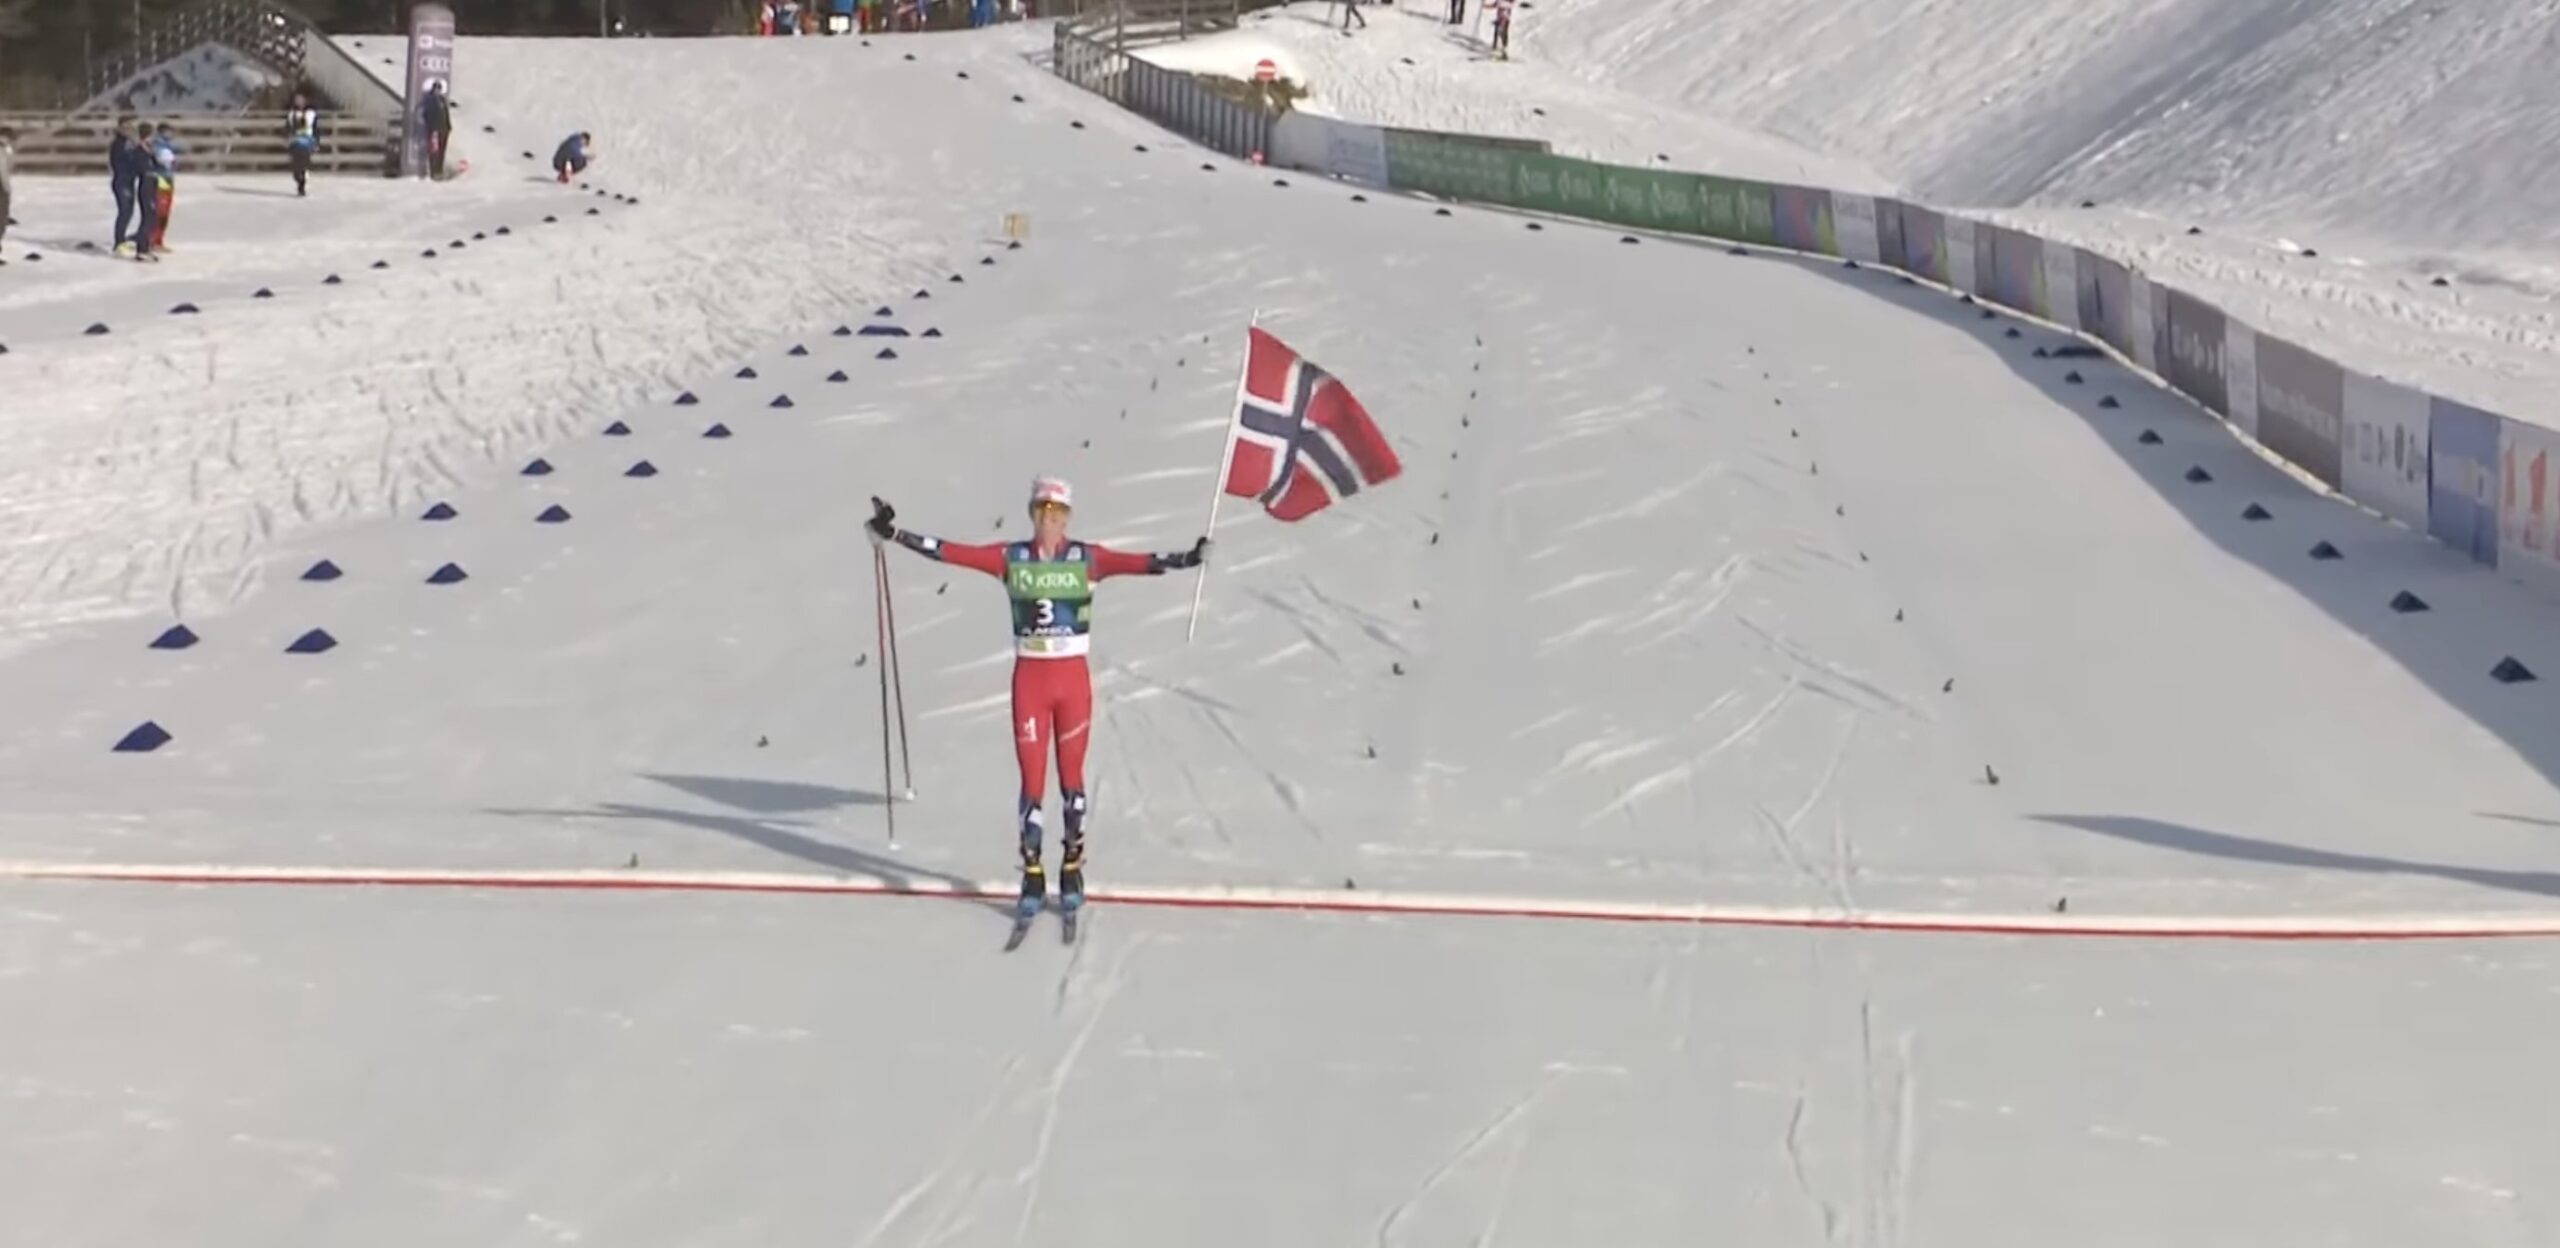 Велосипедист Йорген Нордхаген выиграл чемпионат мира по лыжным гонкам среди юниоров